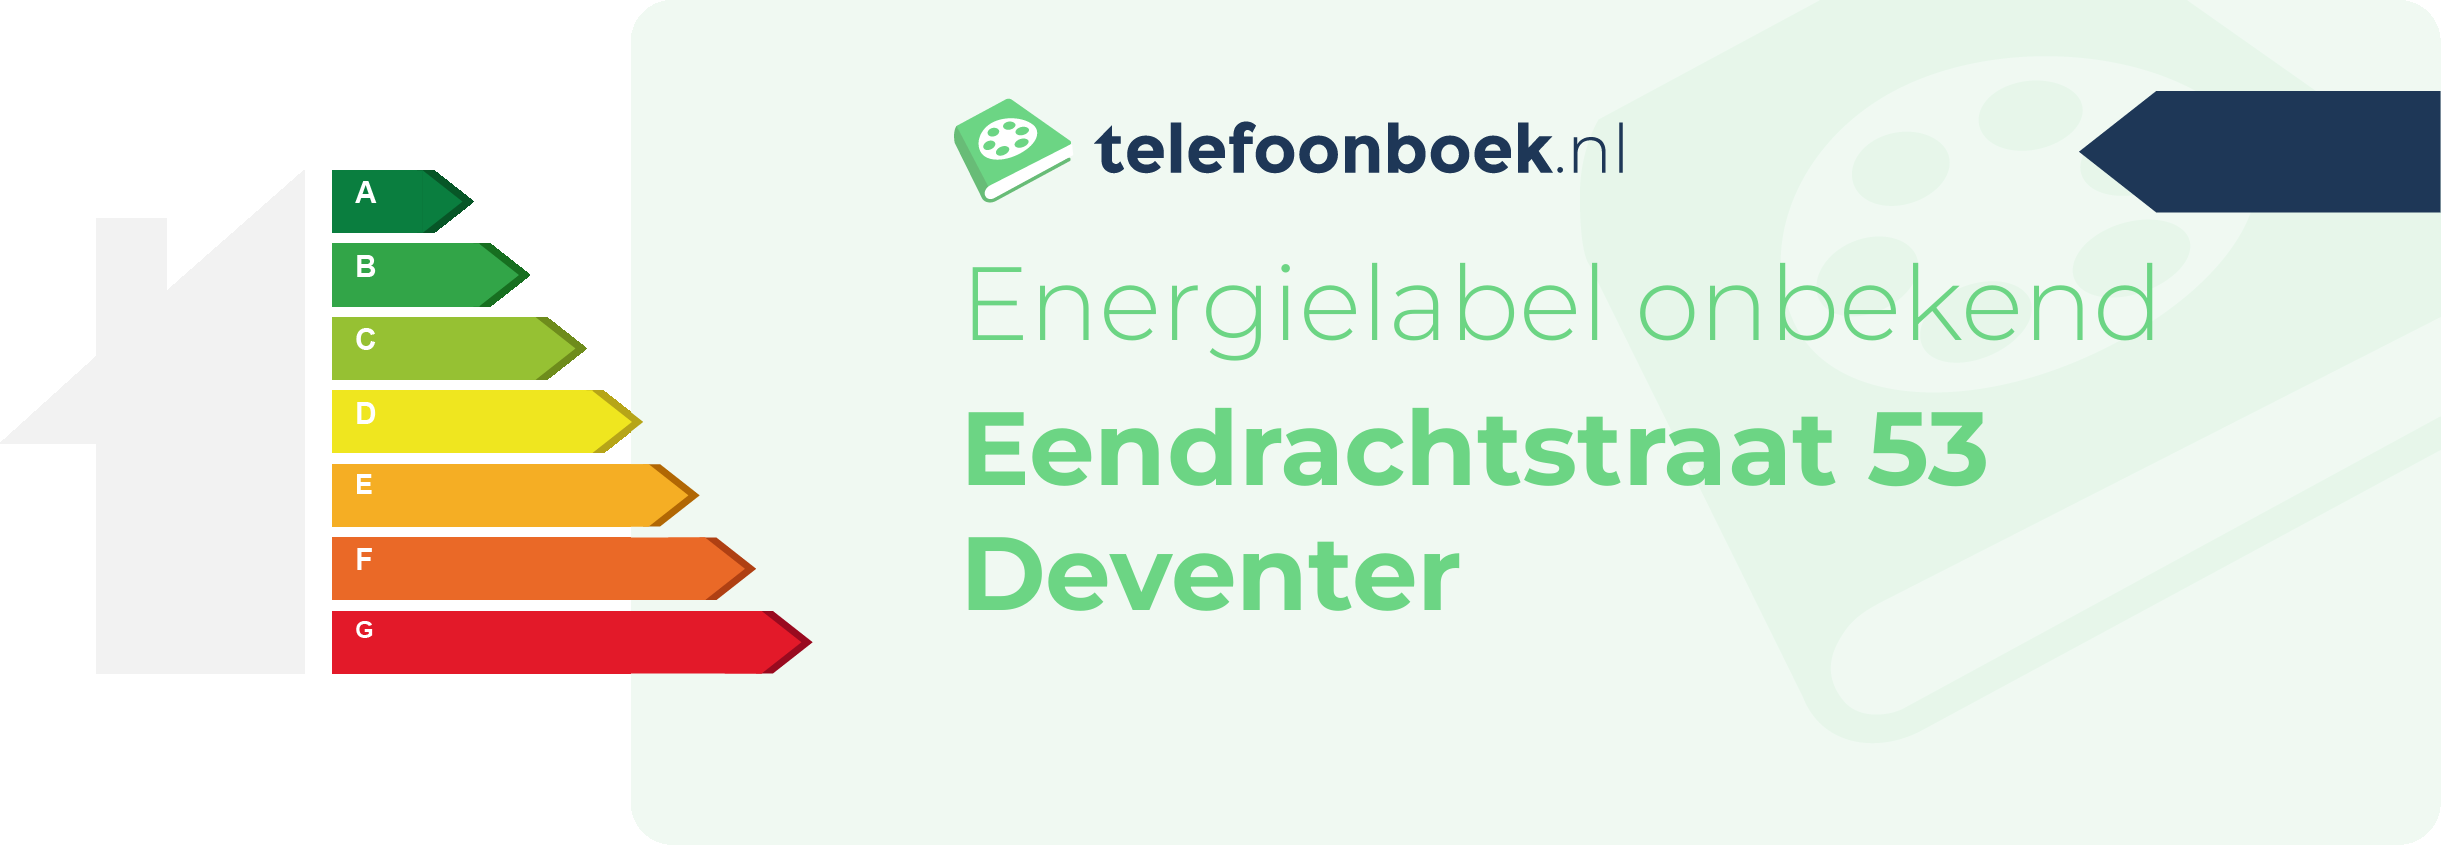 Energielabel Eendrachtstraat 53 Deventer